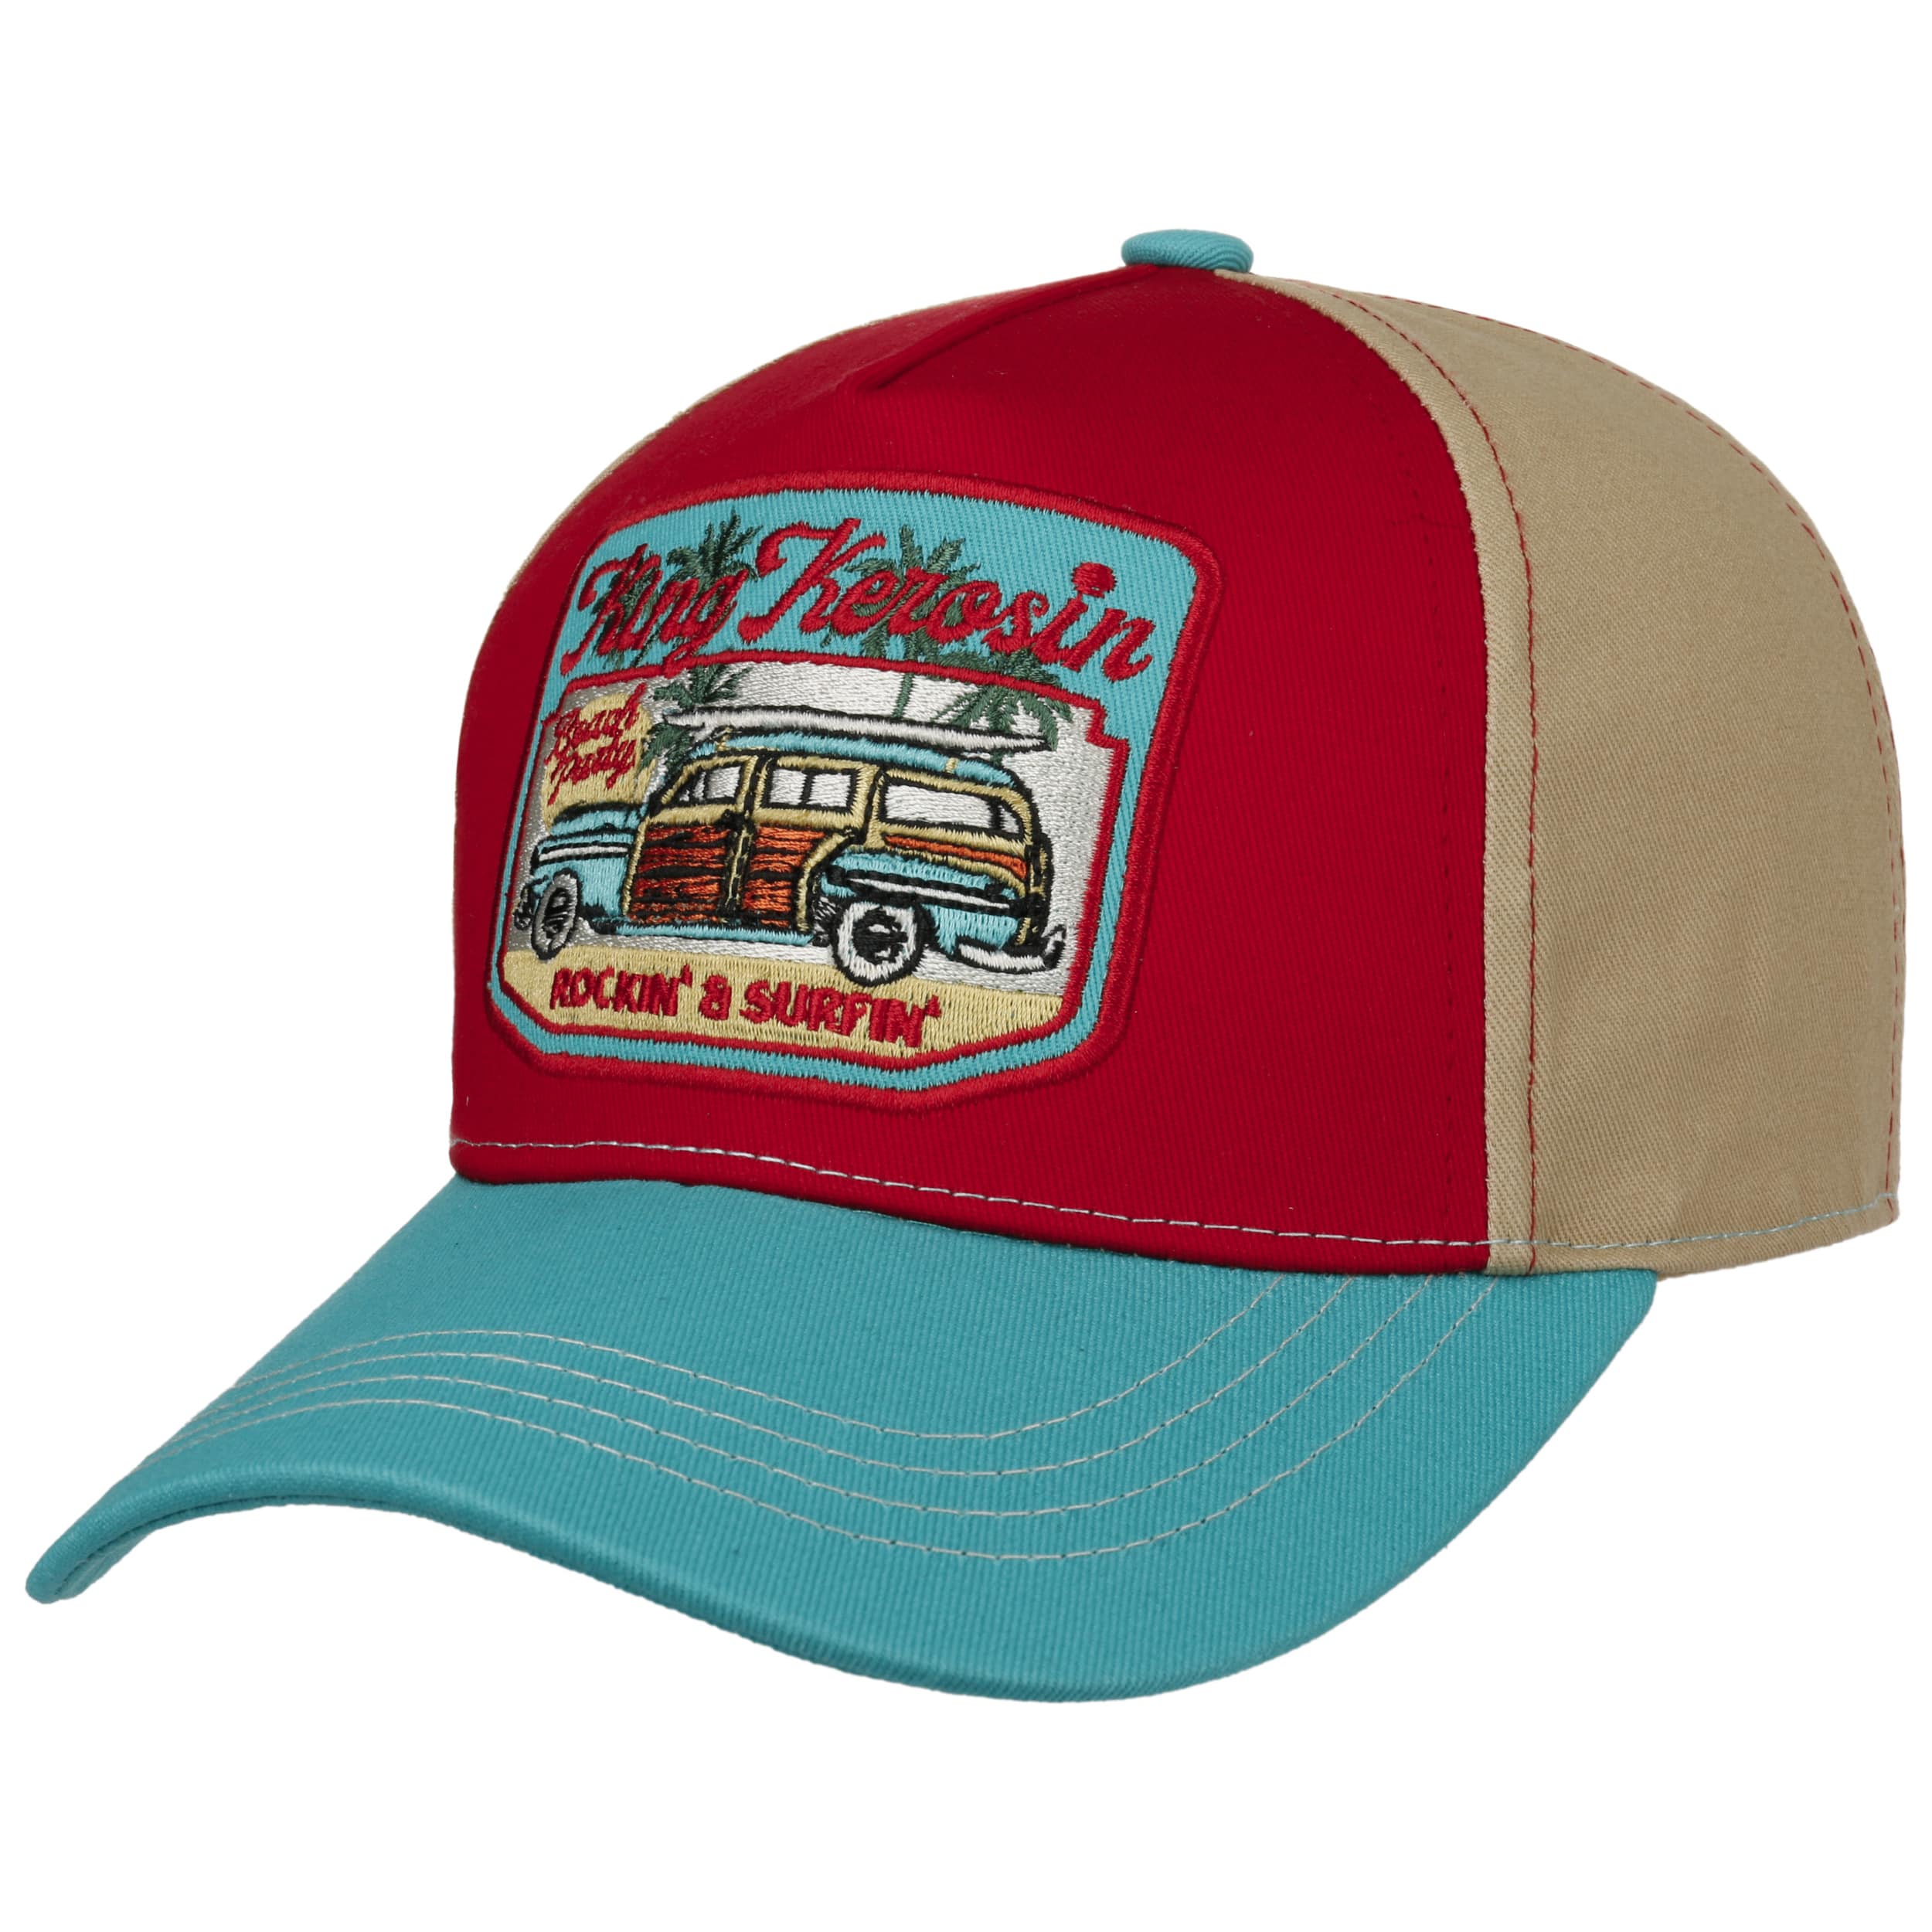 https://img.hatshopping.com/Rockin-Surfin-Trucker-Cap-by-King-Kerosin-turquoise.66144_rf42.jpg